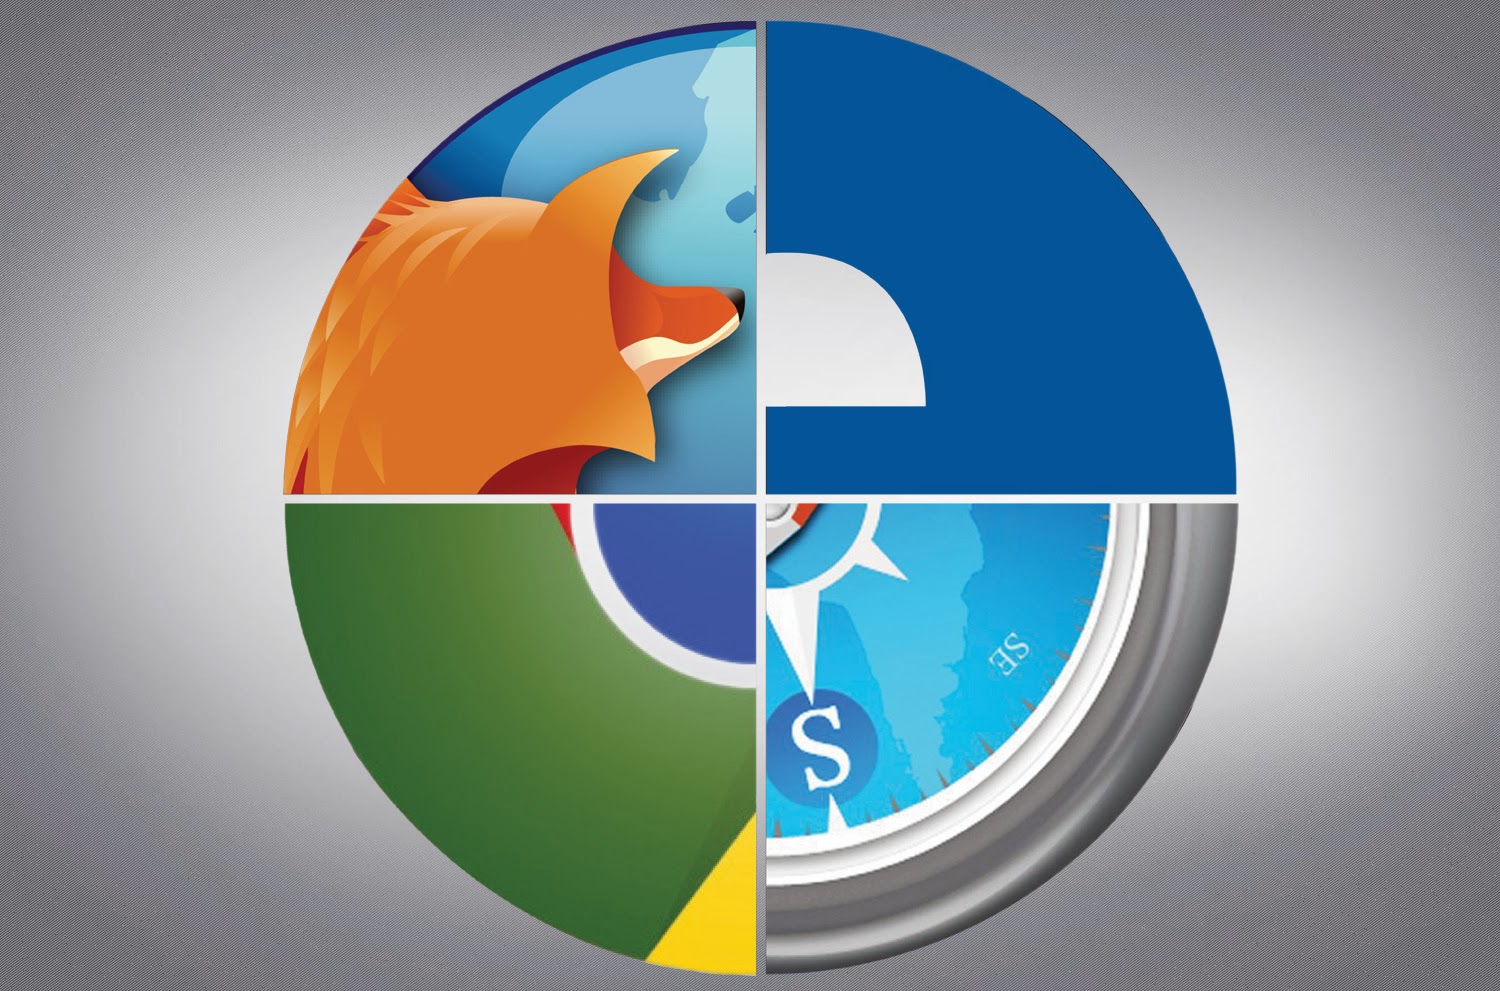 Chrome'un bileği bükülmüyor: Firefox'a 7, Edge'e 15 kat fark